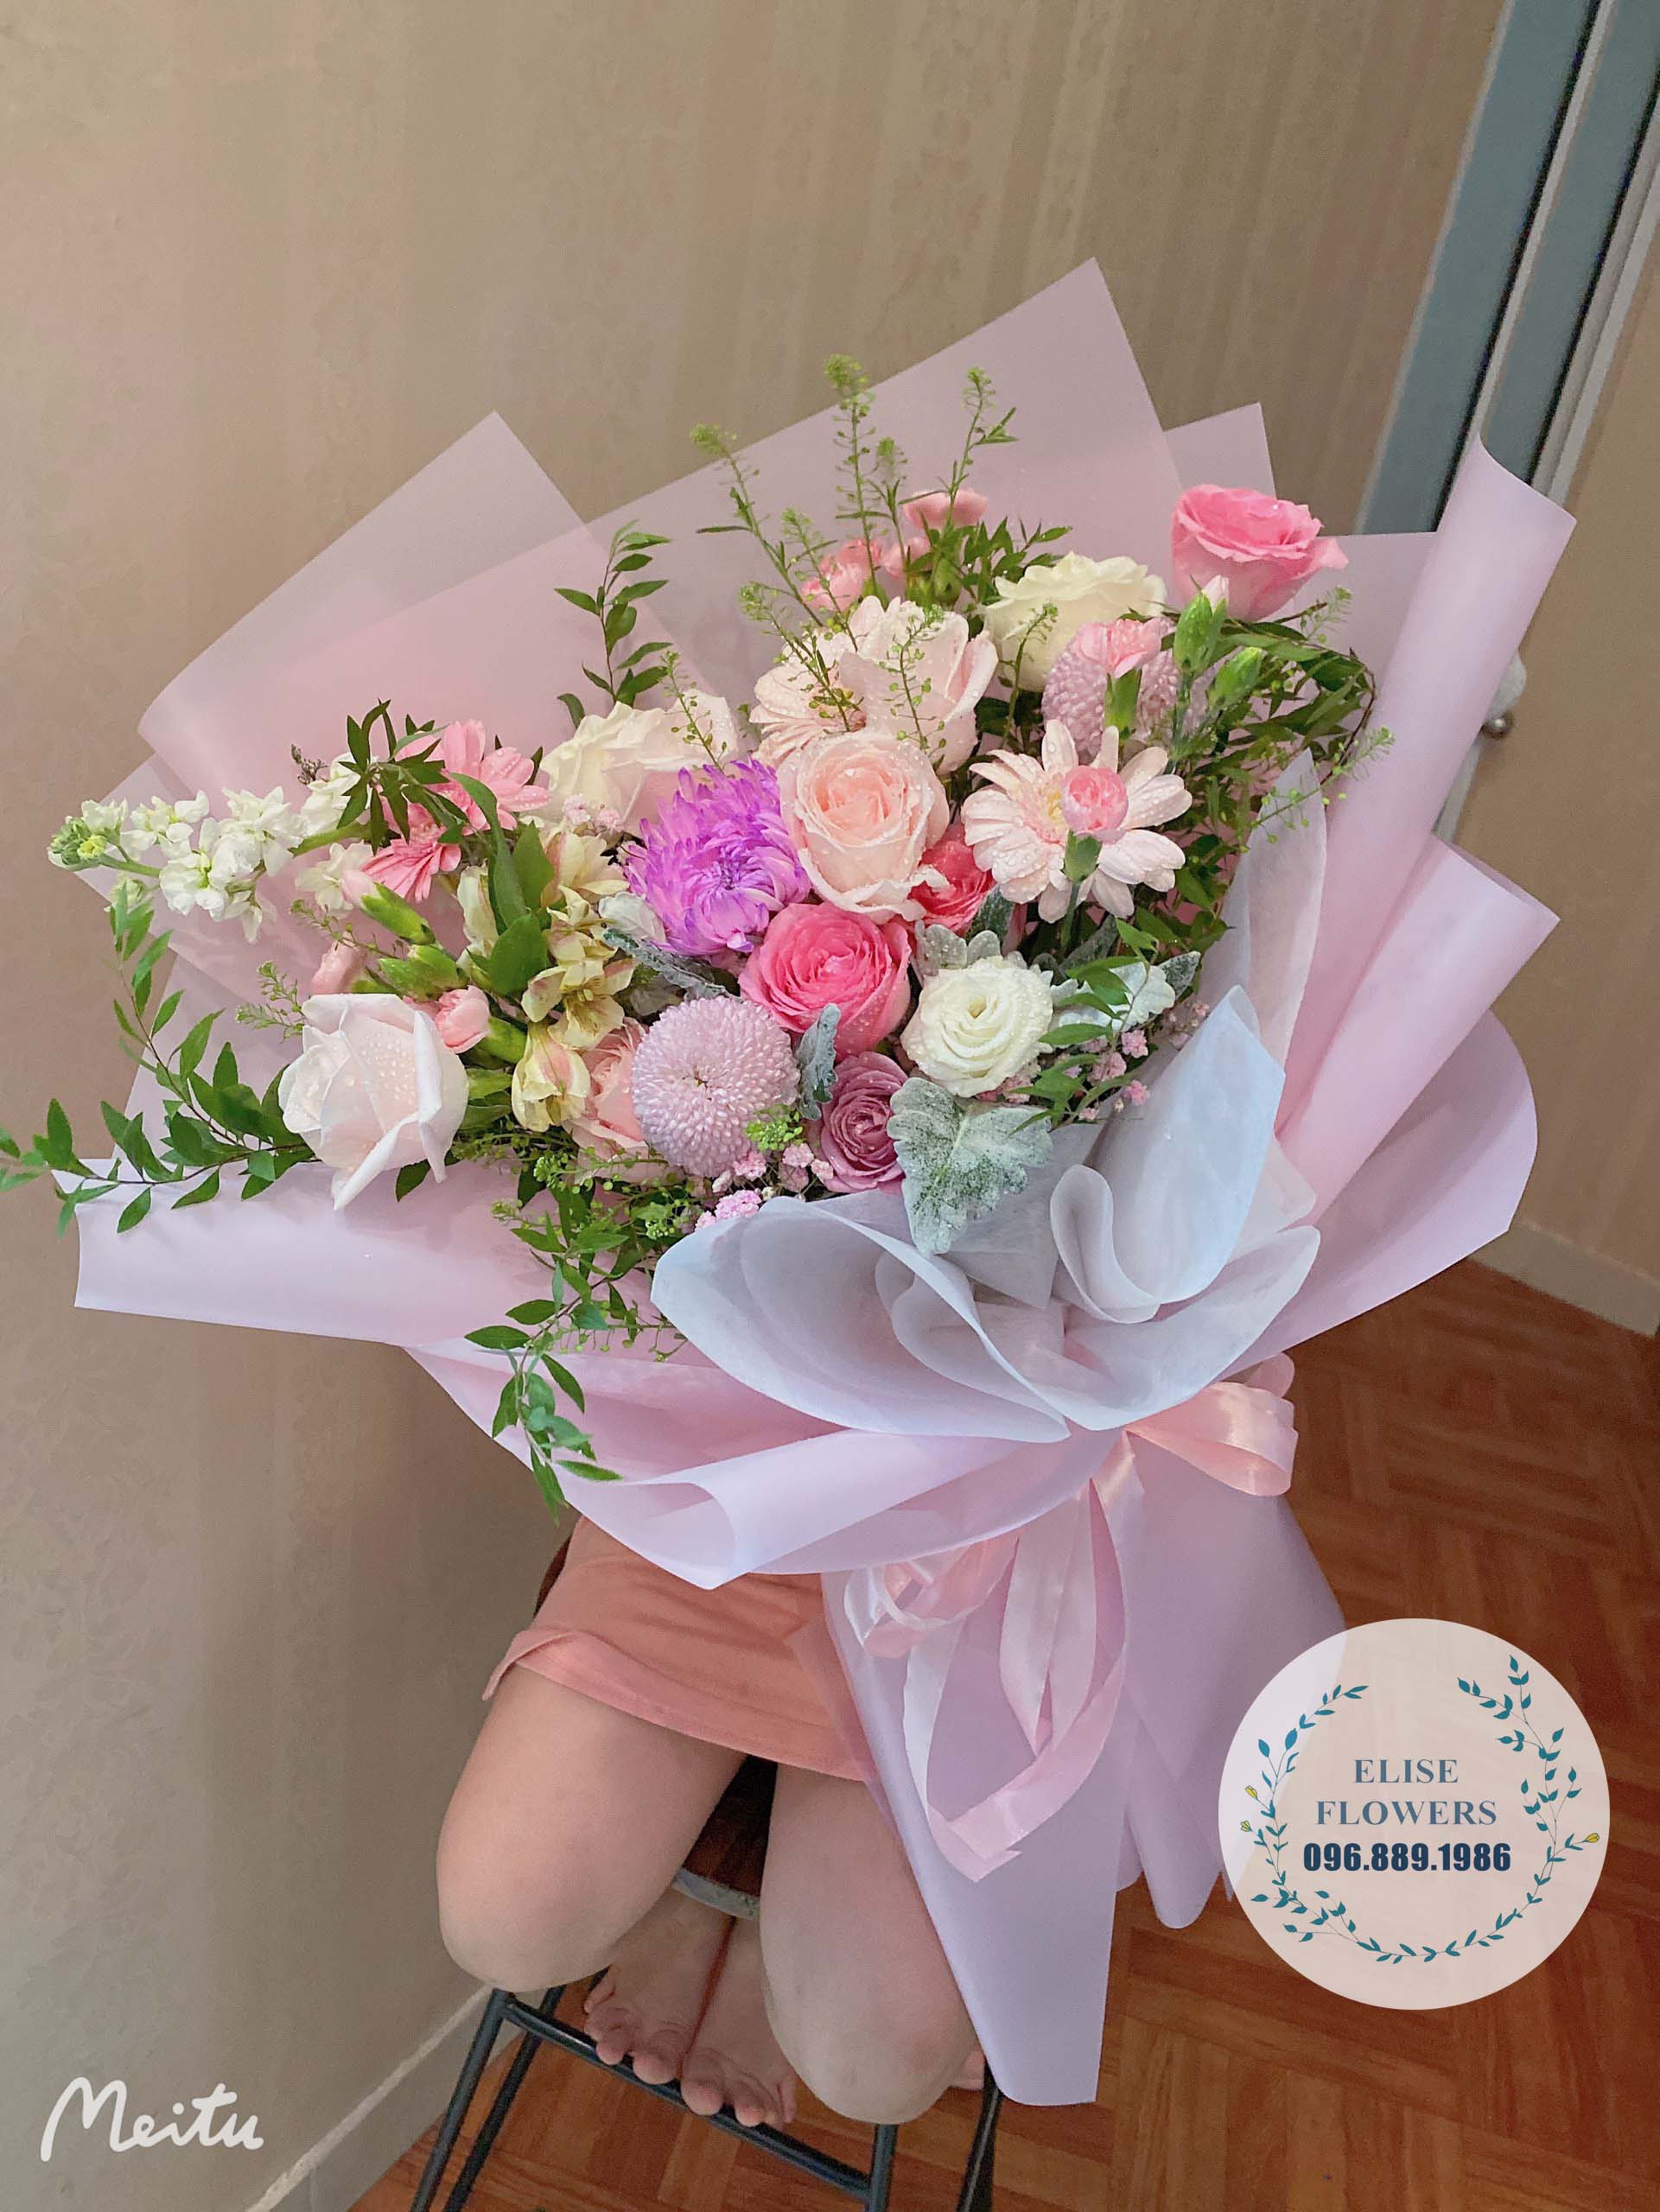 bó hoa sinh hật đẹp màu hồng mộng mơ - hoa sinh nhật quận ầu giấy Hà Nội - dịch vụ điện hoa sinh nhật hà nội